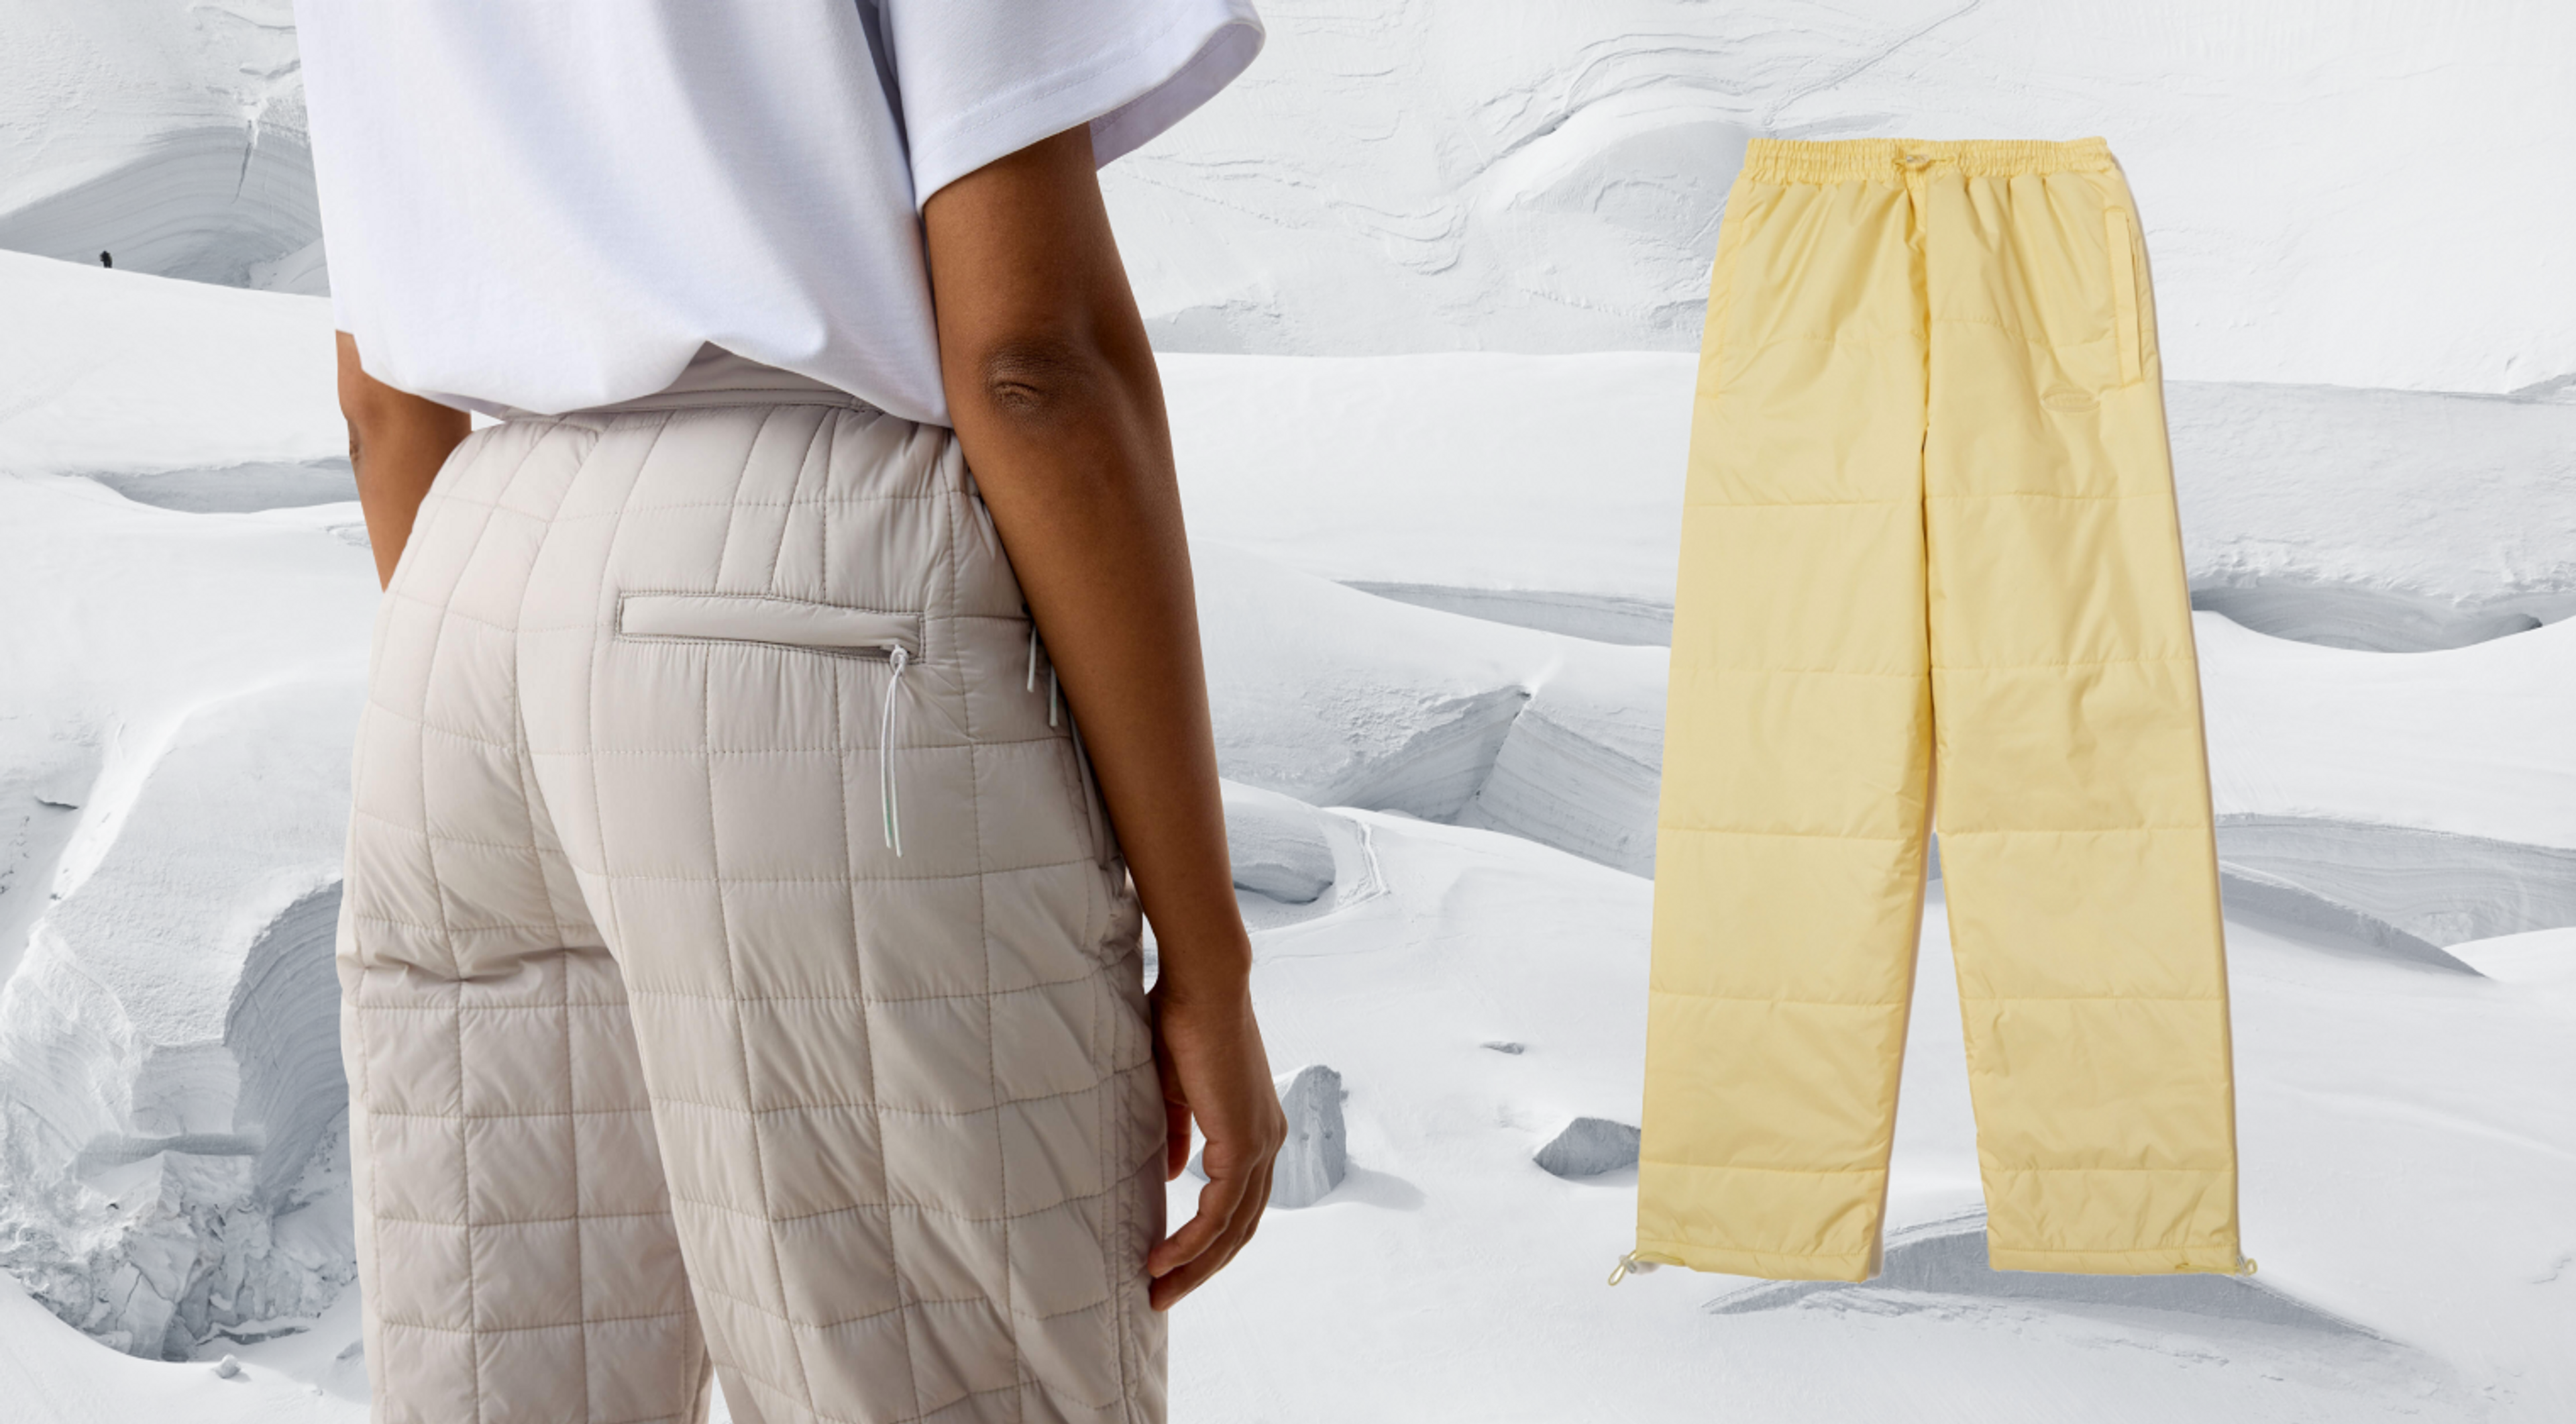 Максимально теплые штаны на зиму — стеганые брюки с горнолыжных склонов